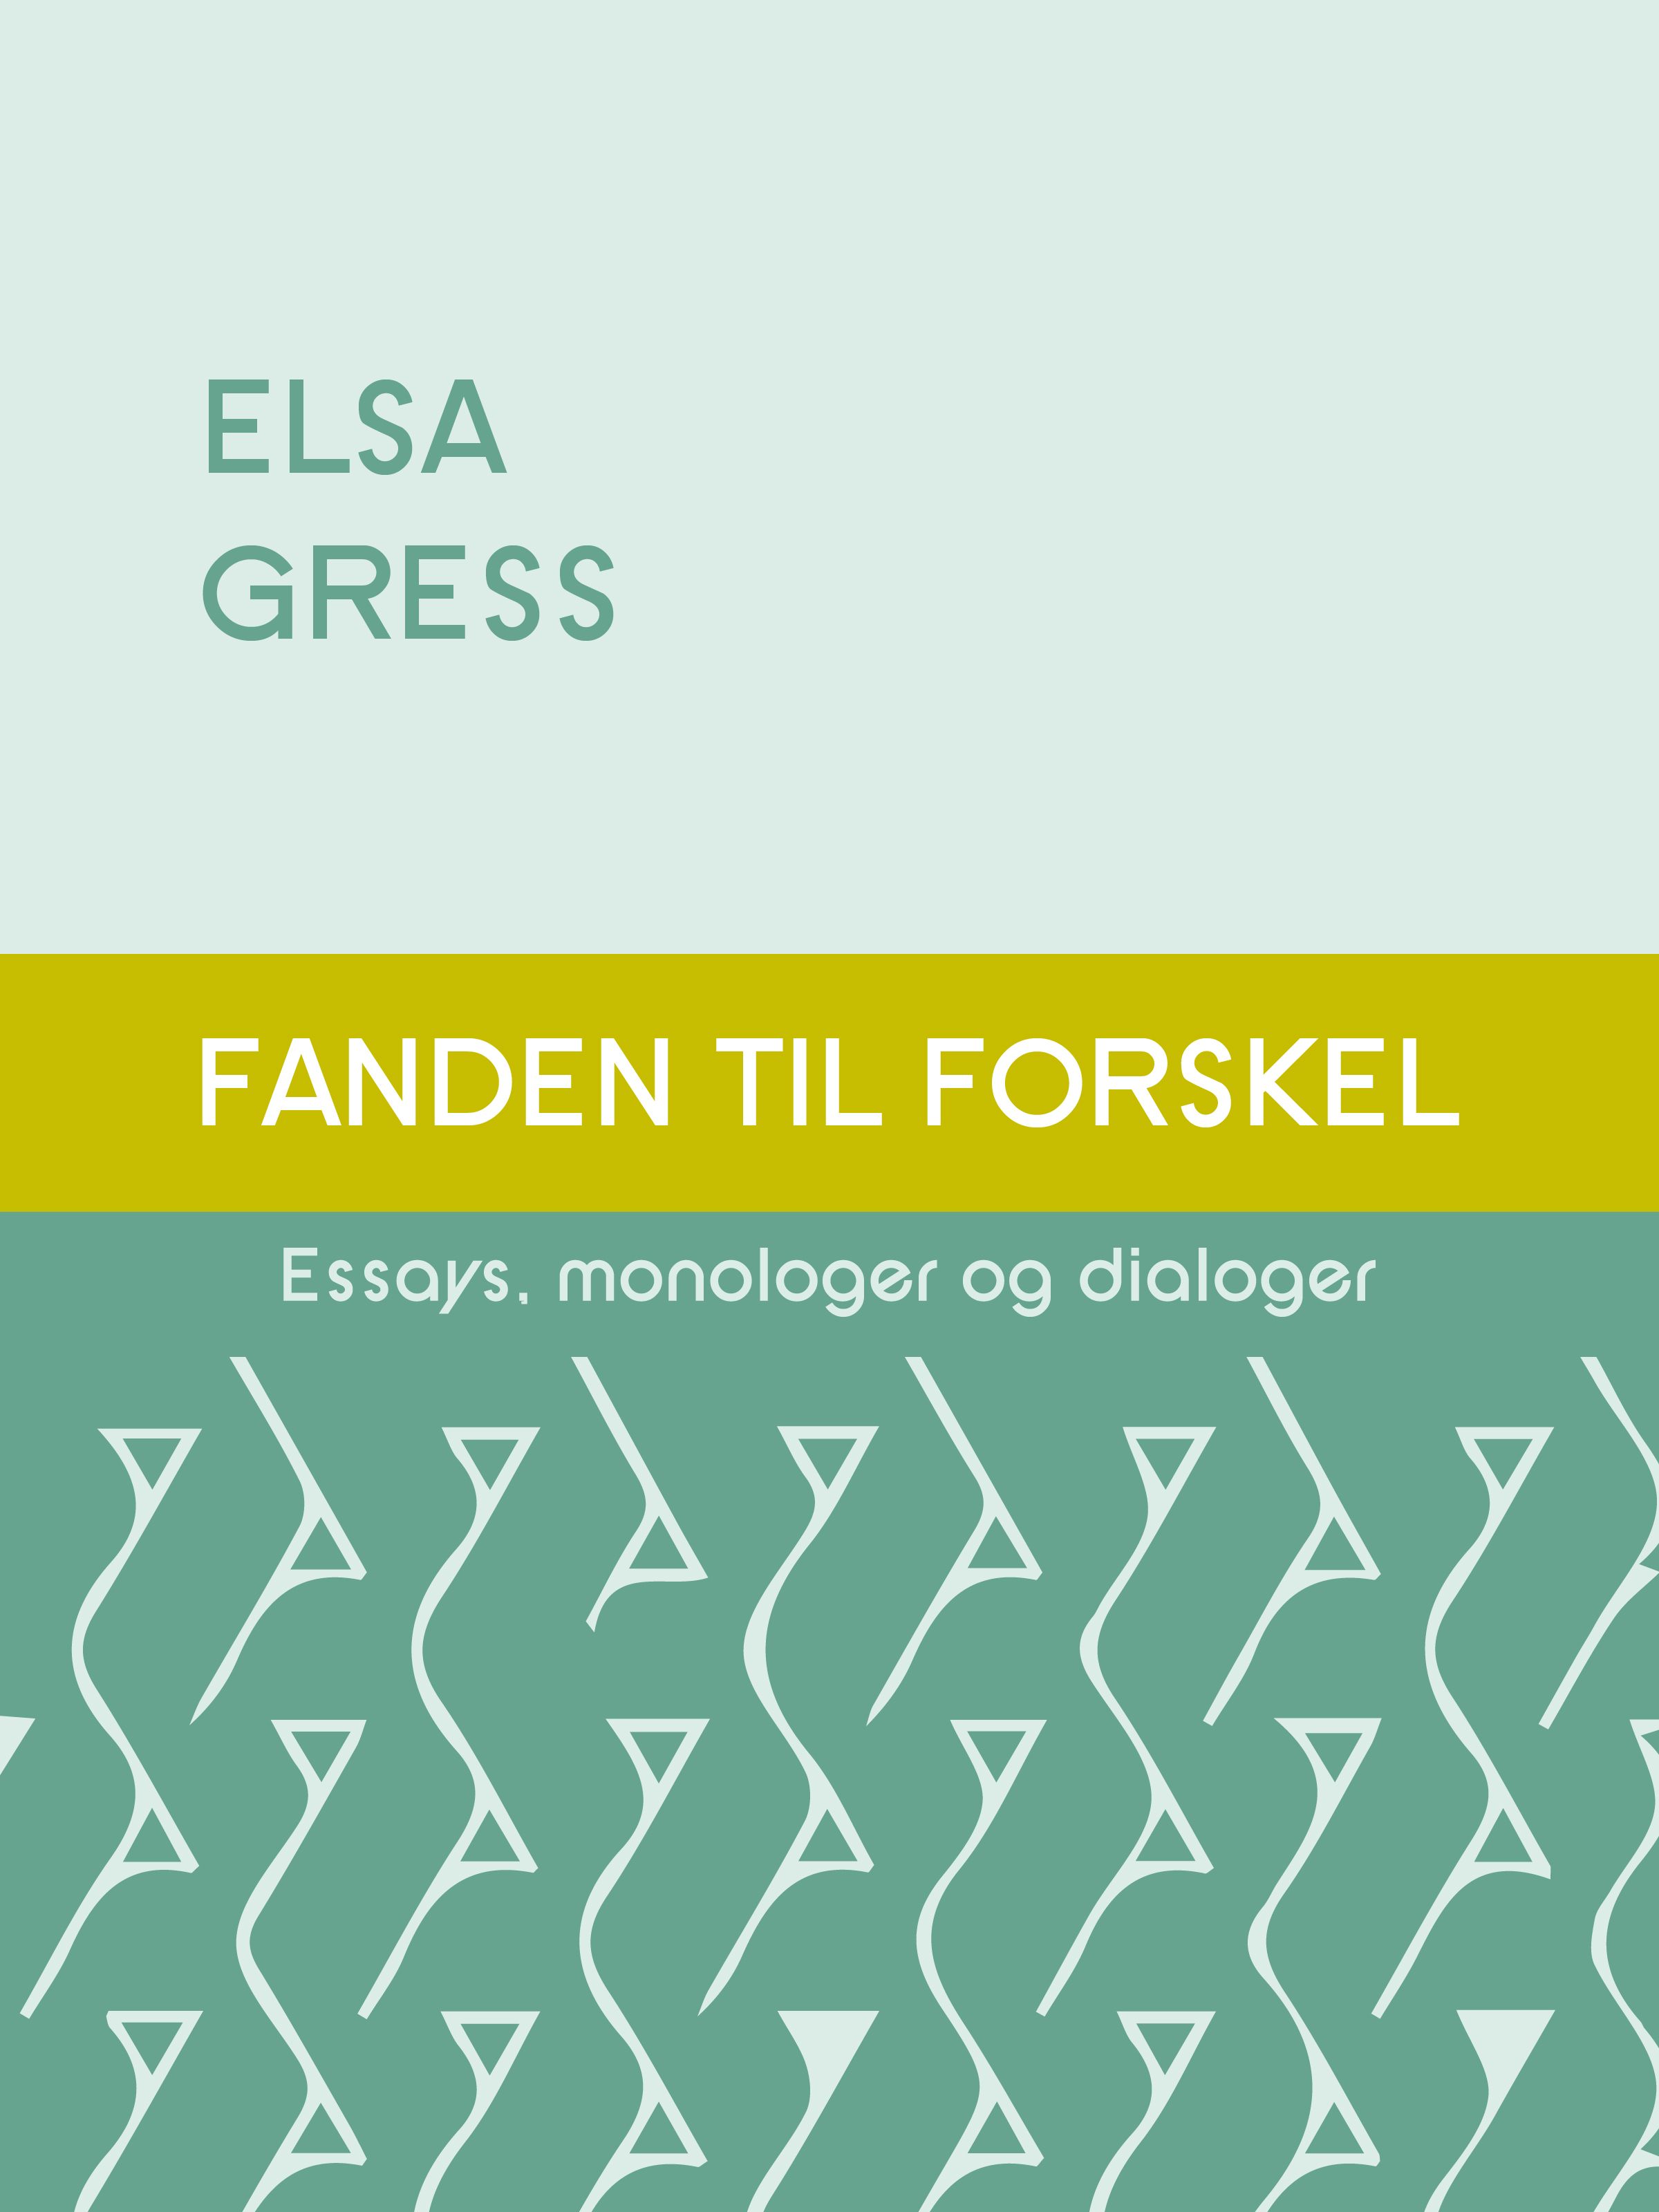 Fanden til forskel - Essays, monologer og dialoger, e-bog af Elsa Gress